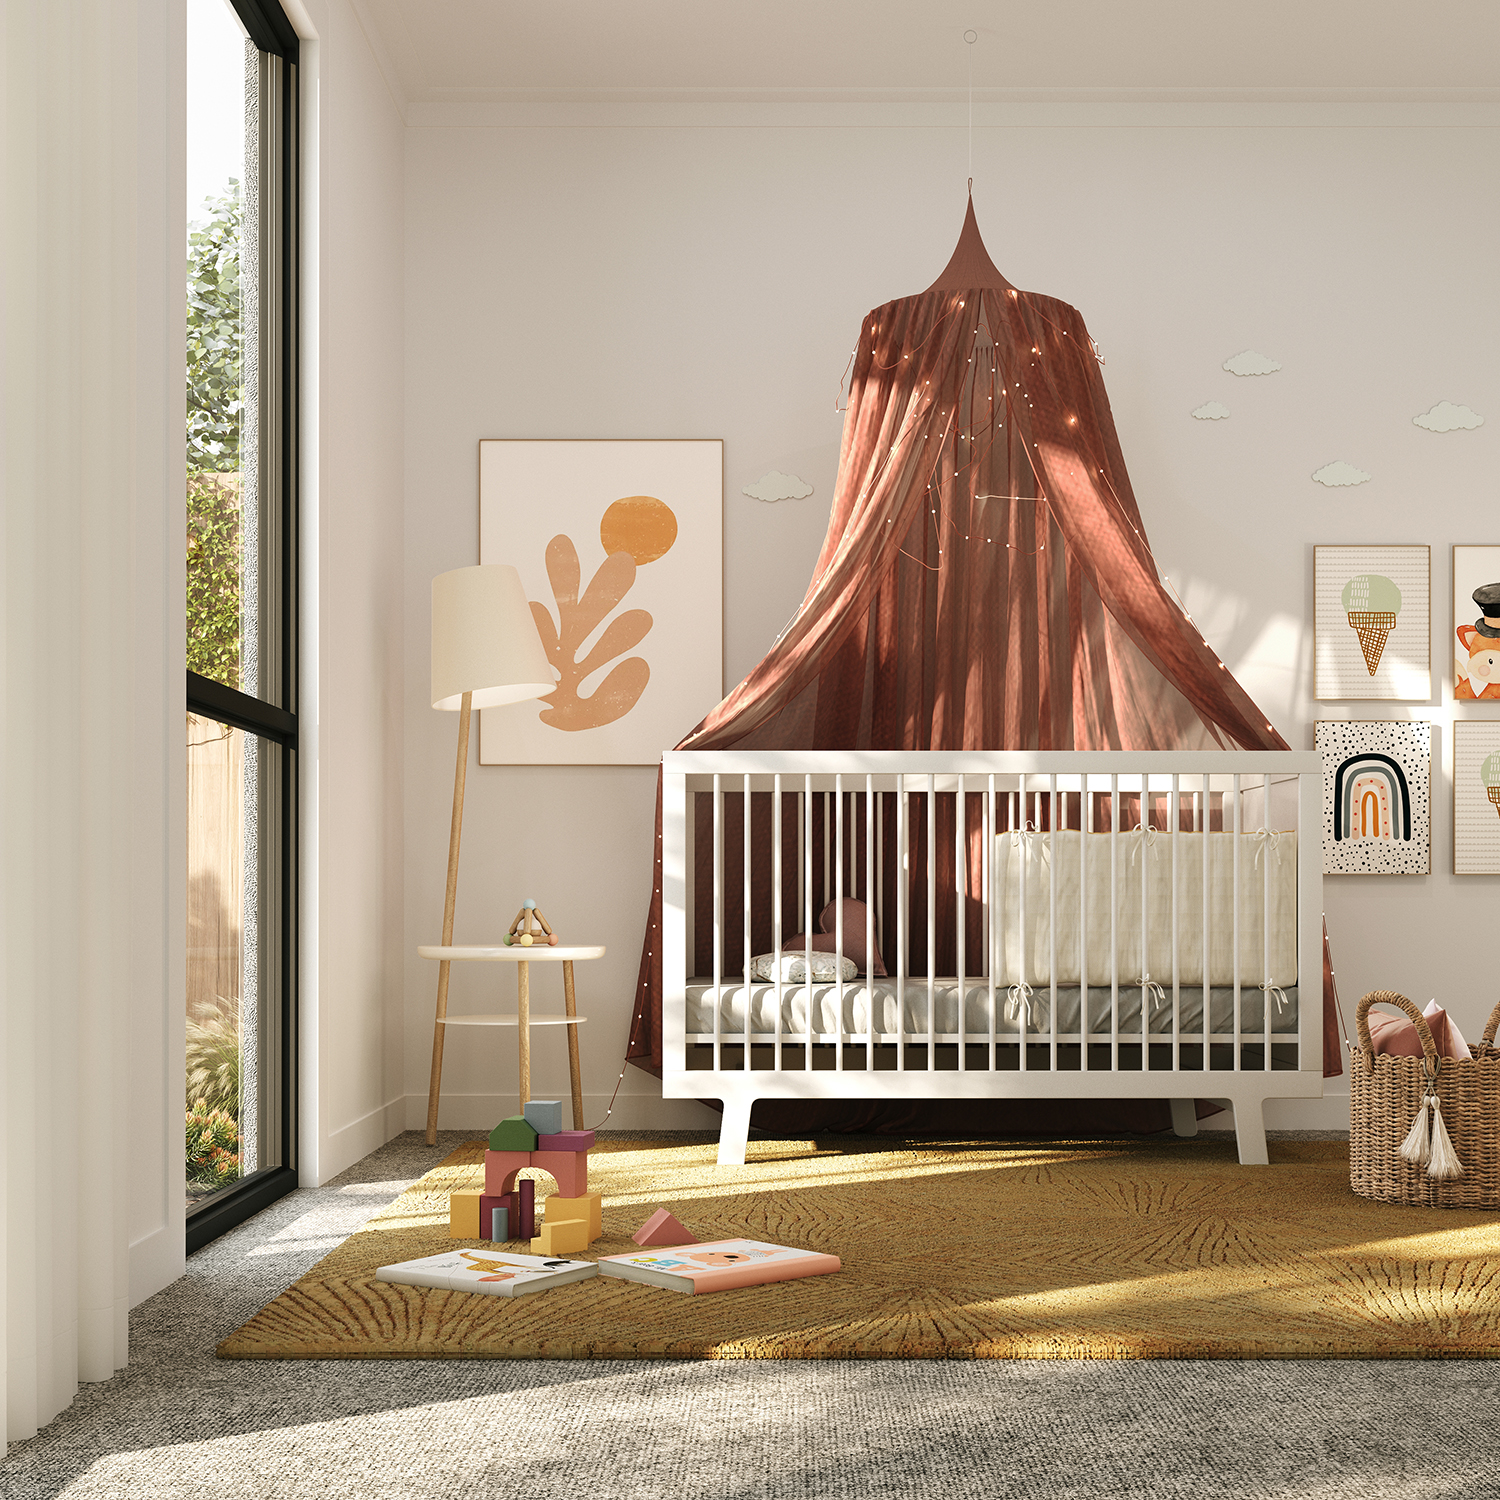 Multi-purpose room furnished as a nursery